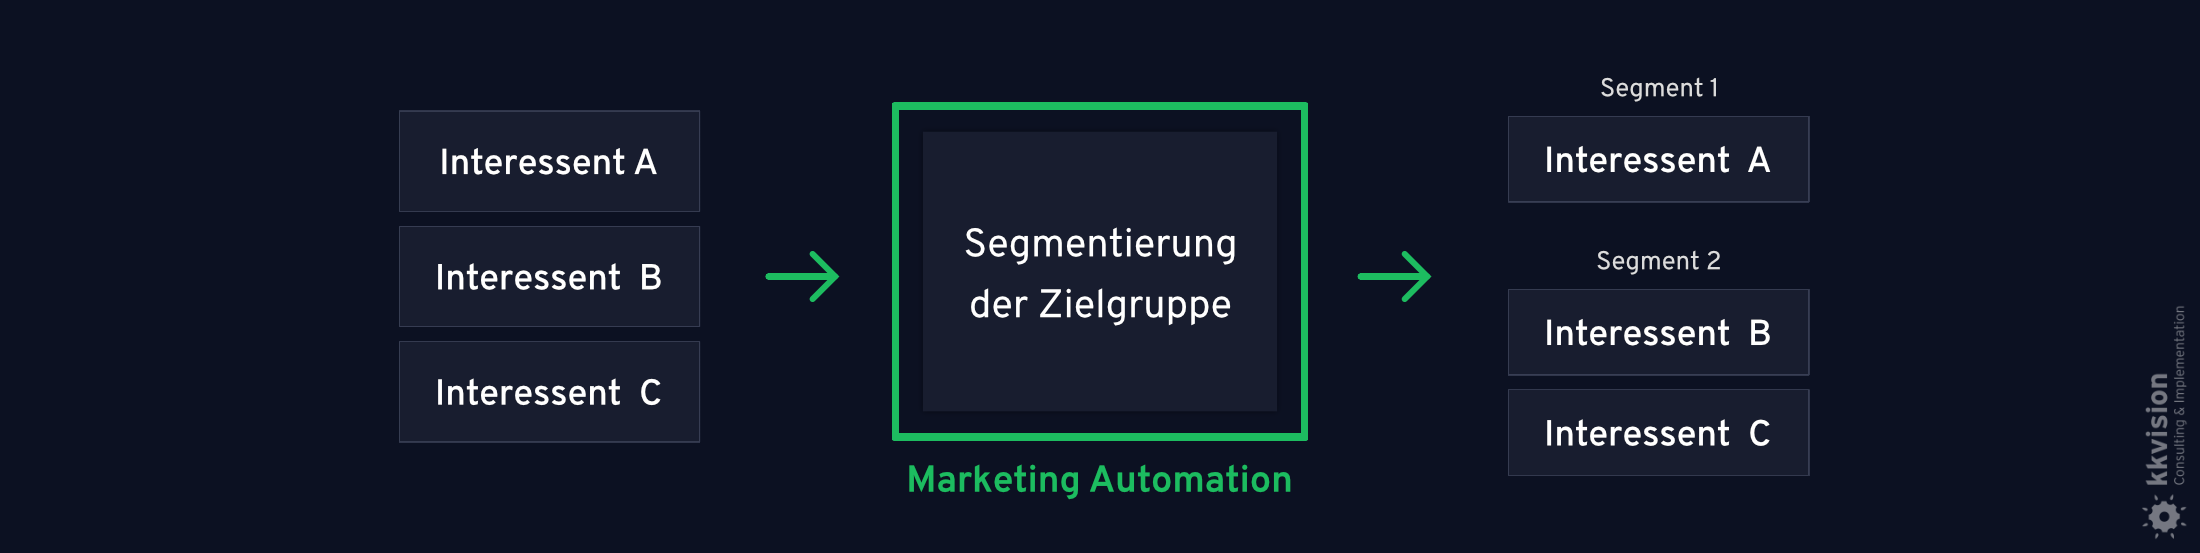 B2B Marketing Automation_14